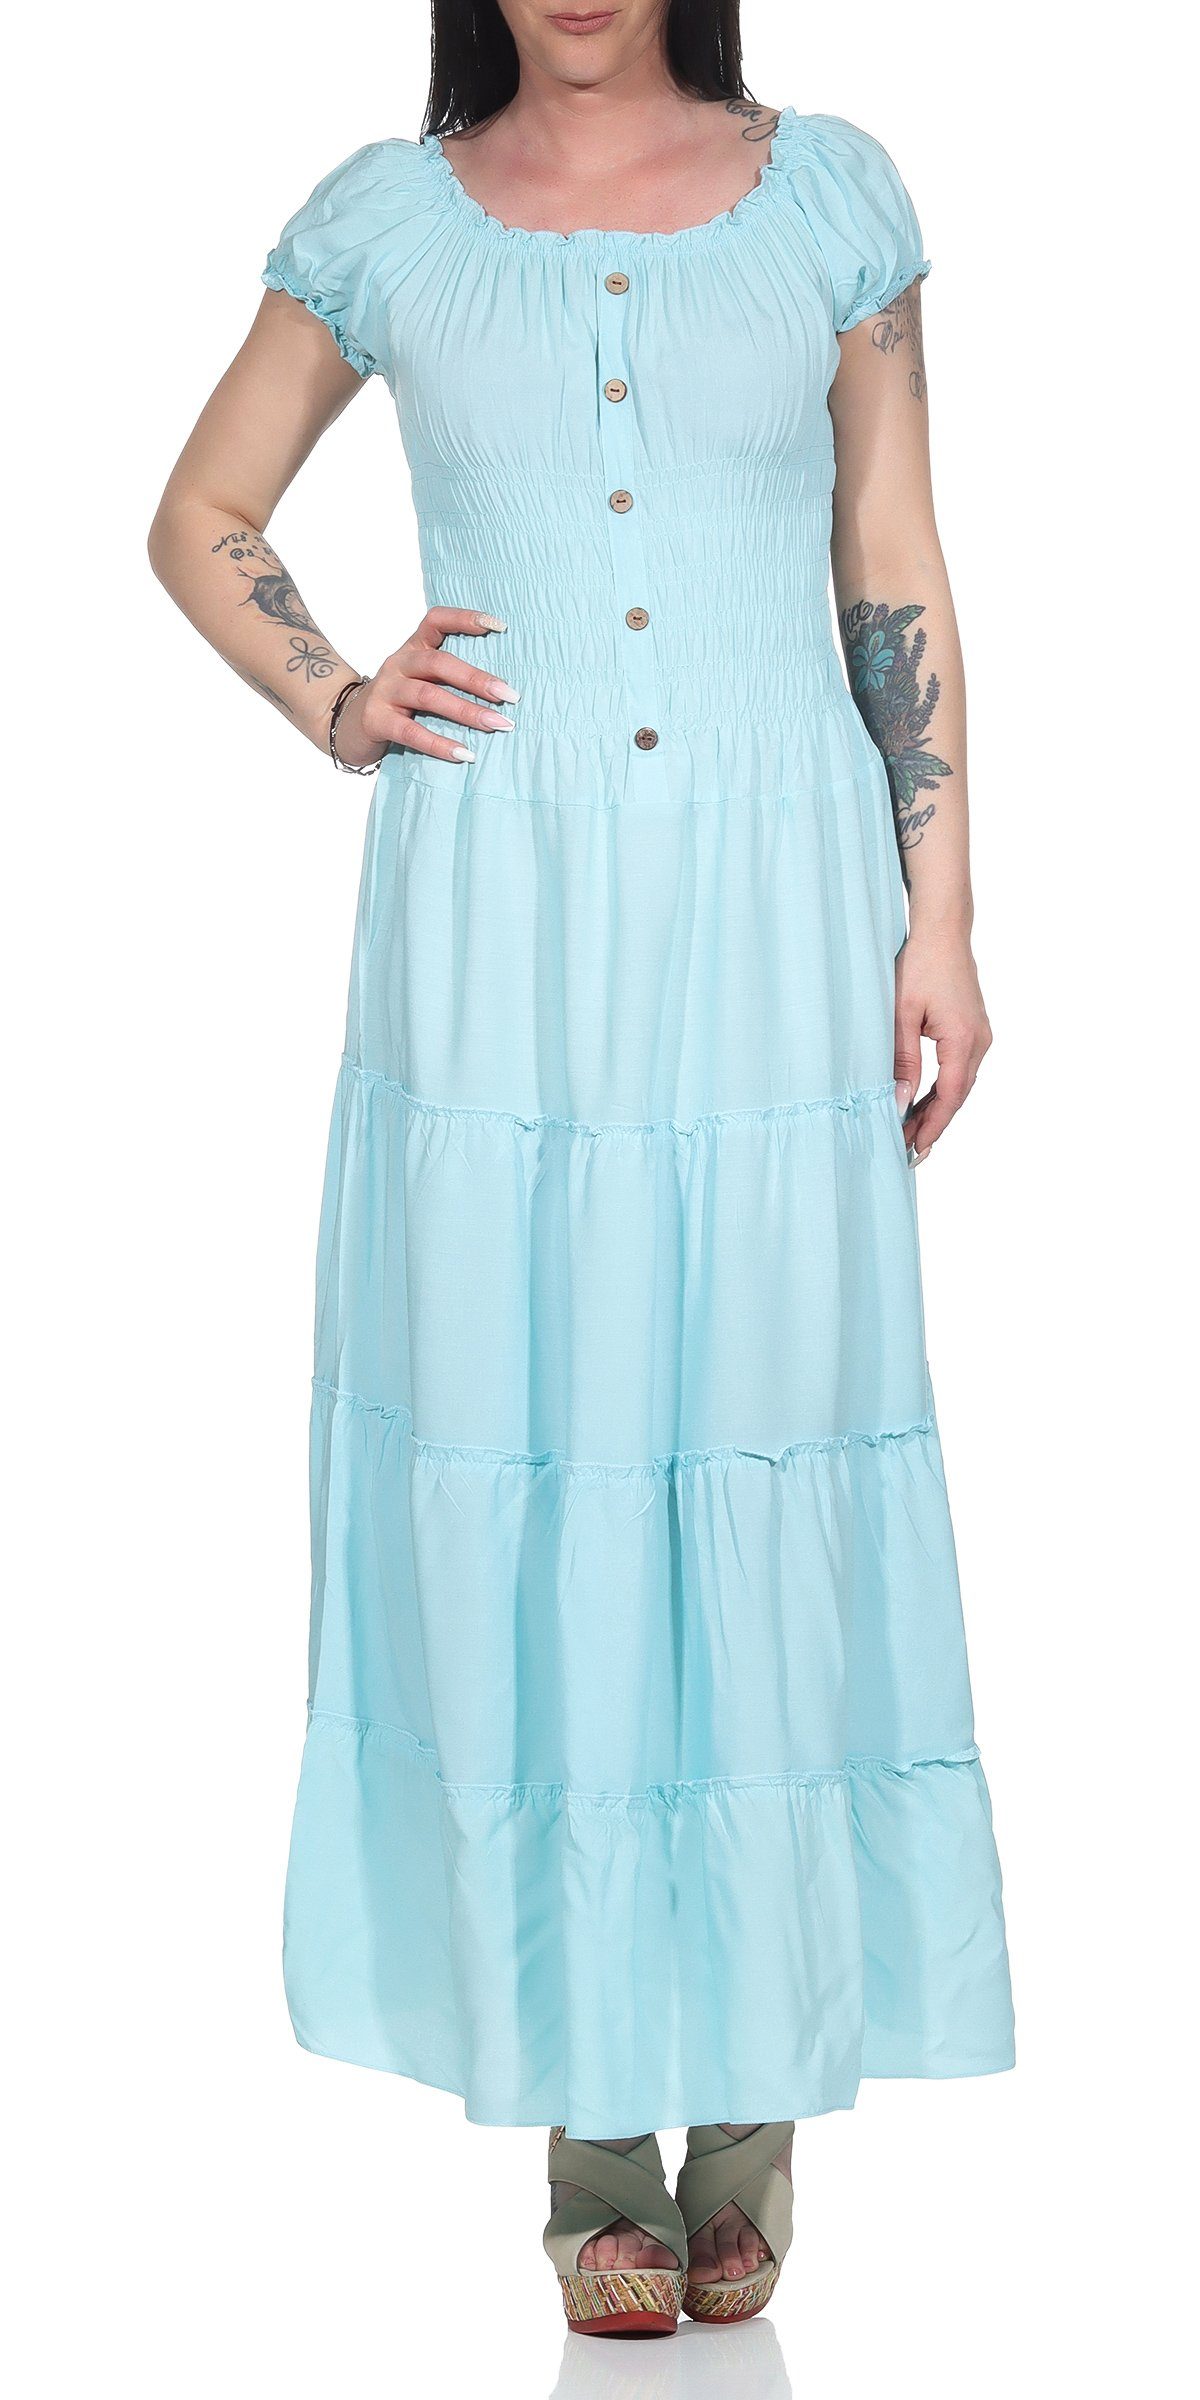 Aurela Damenmode Strandkleid »Kleider Damen elegant Sommer Kleider lang  einfarbig« Gesamtlänge: 132 - 135cm, Carmen- oder Rundhals Ausschnitt  möglich